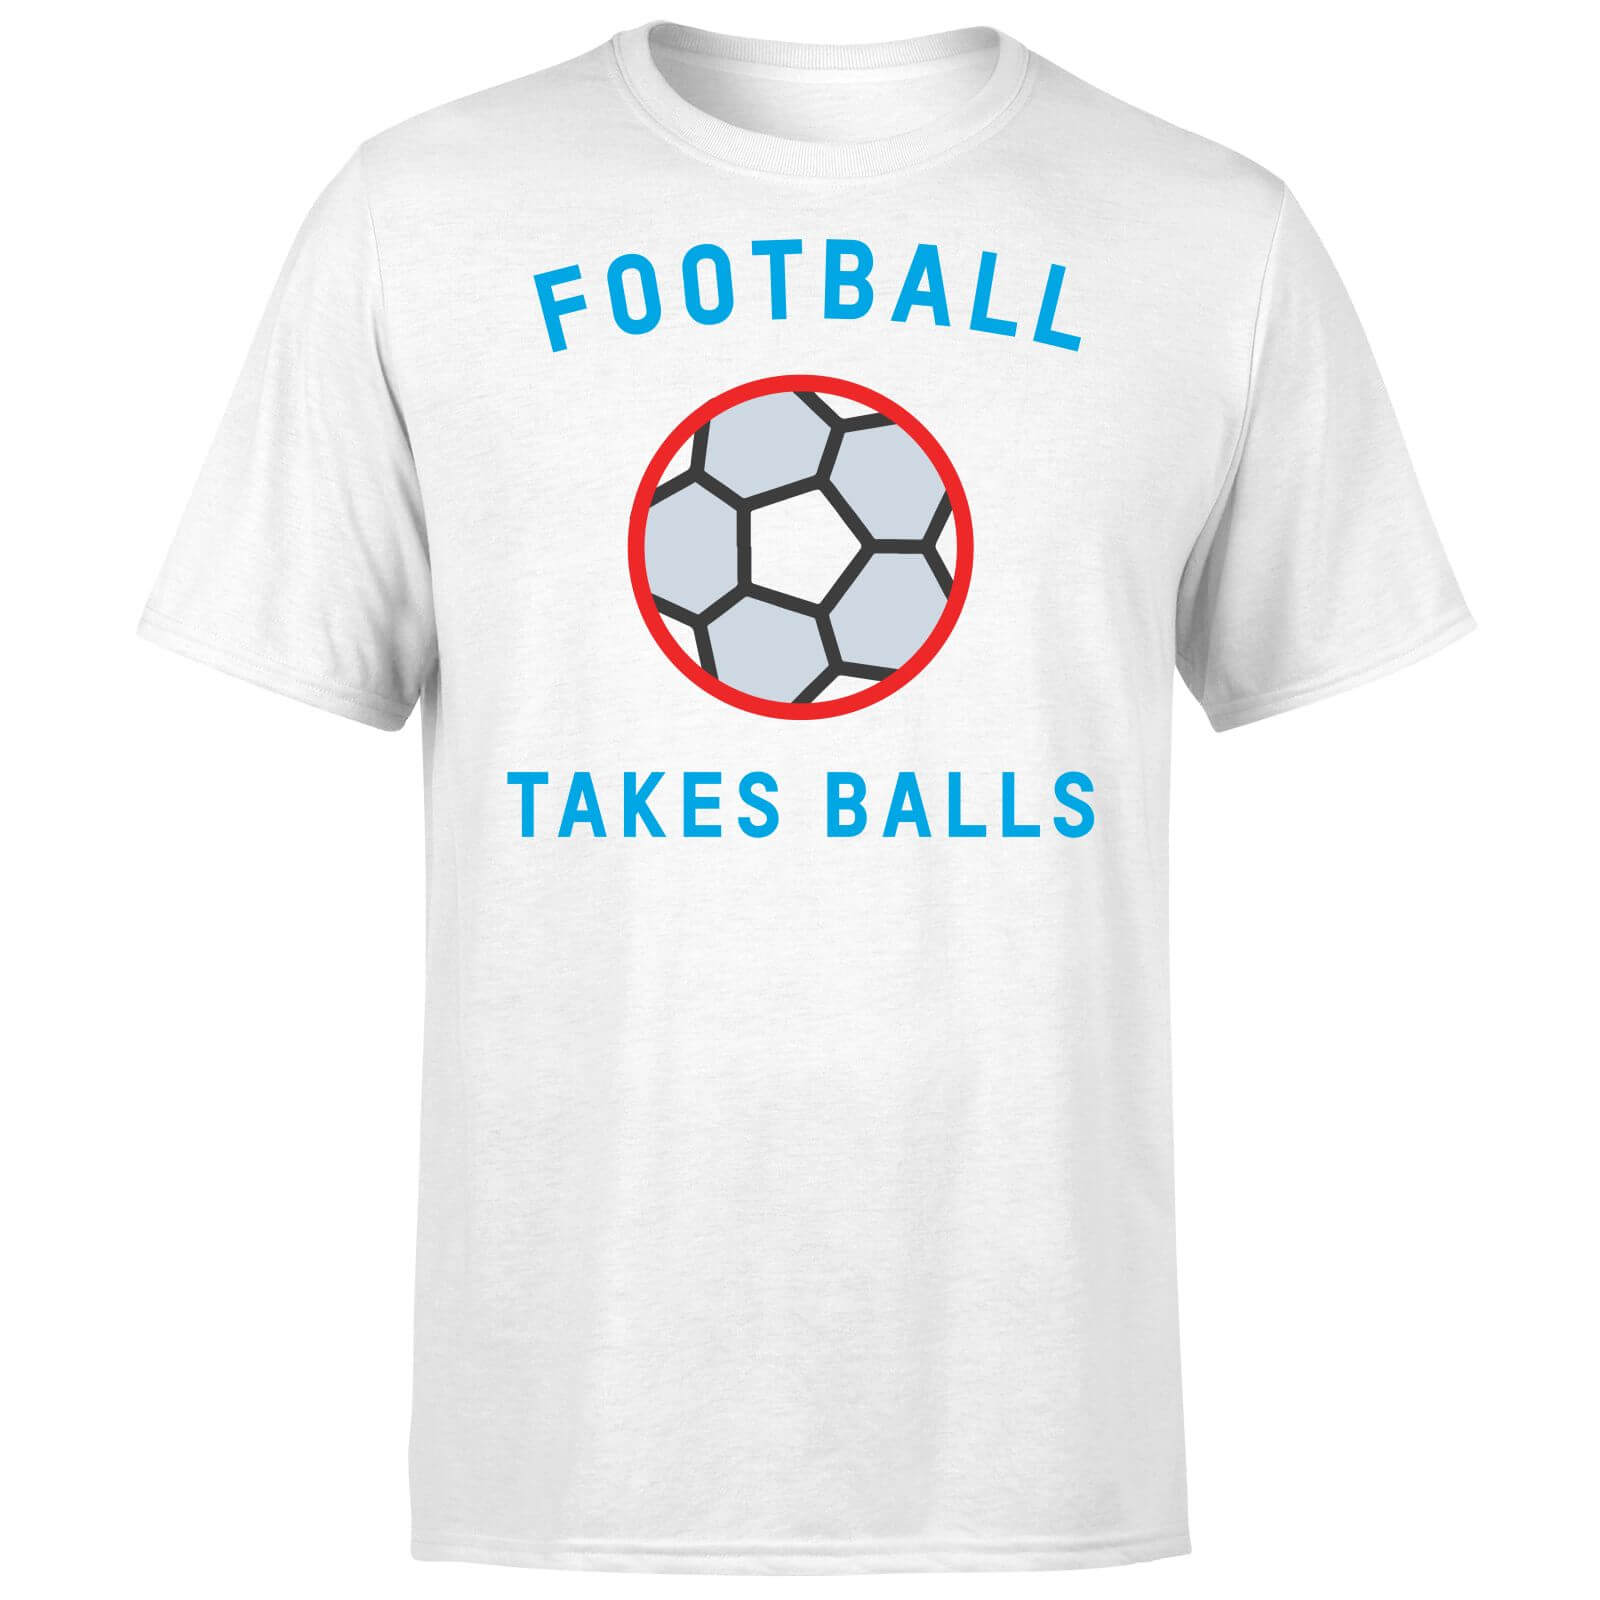 Football Takes Balls T Shirt   White   XL   White